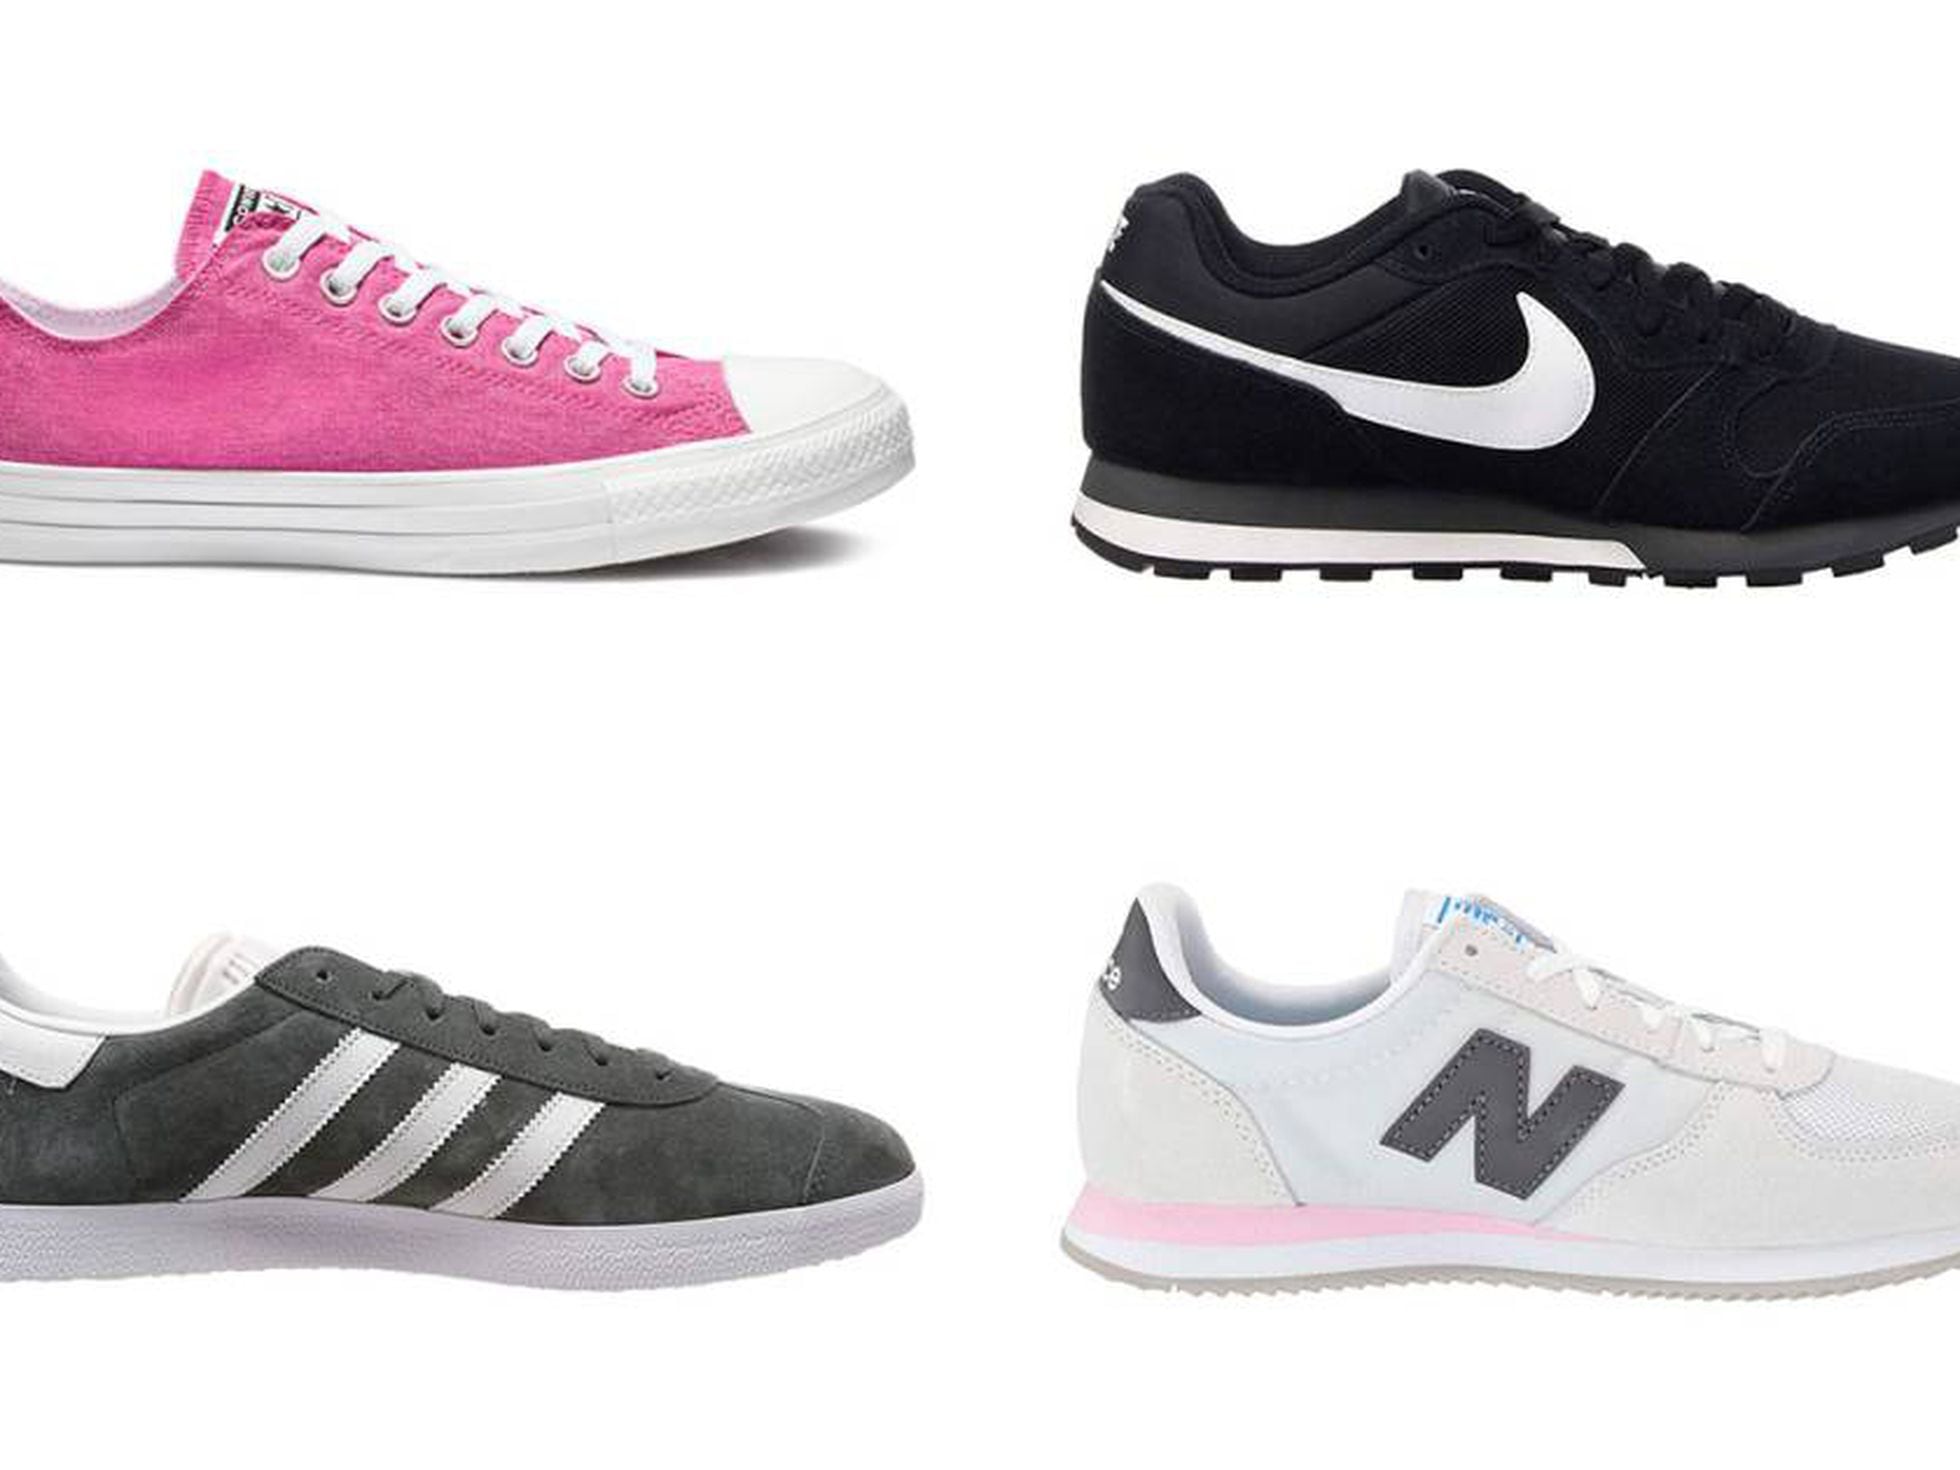 Las Nike MD Runner 2, las 220 y otras grandes ofertas en zapatillas | Escaparate | PAÍS